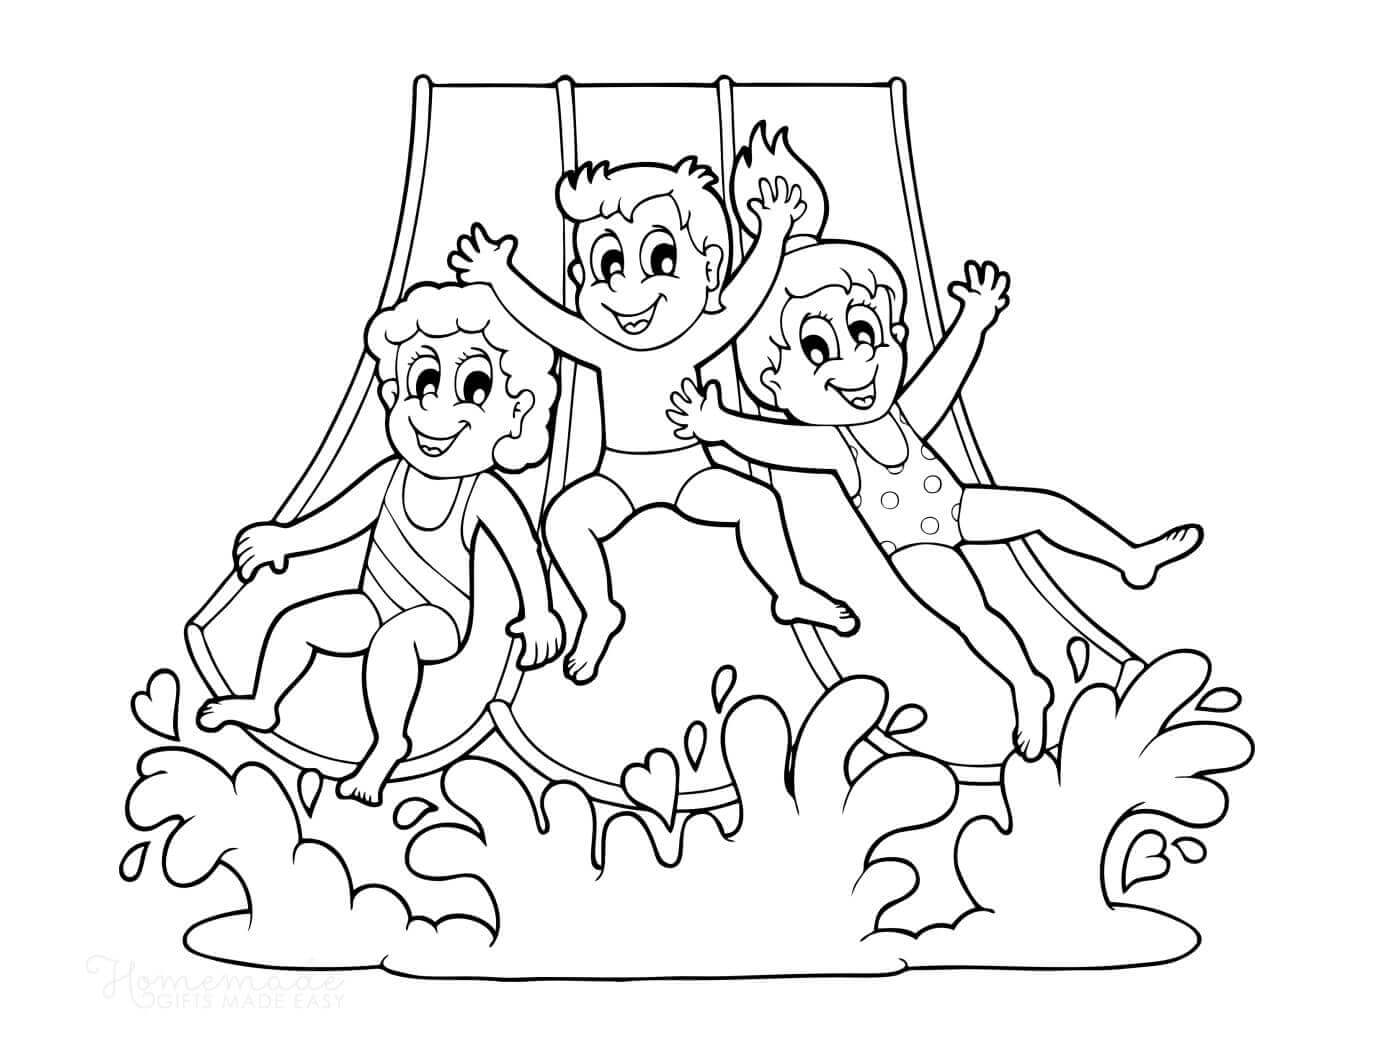 Drie kinderen zwemmen